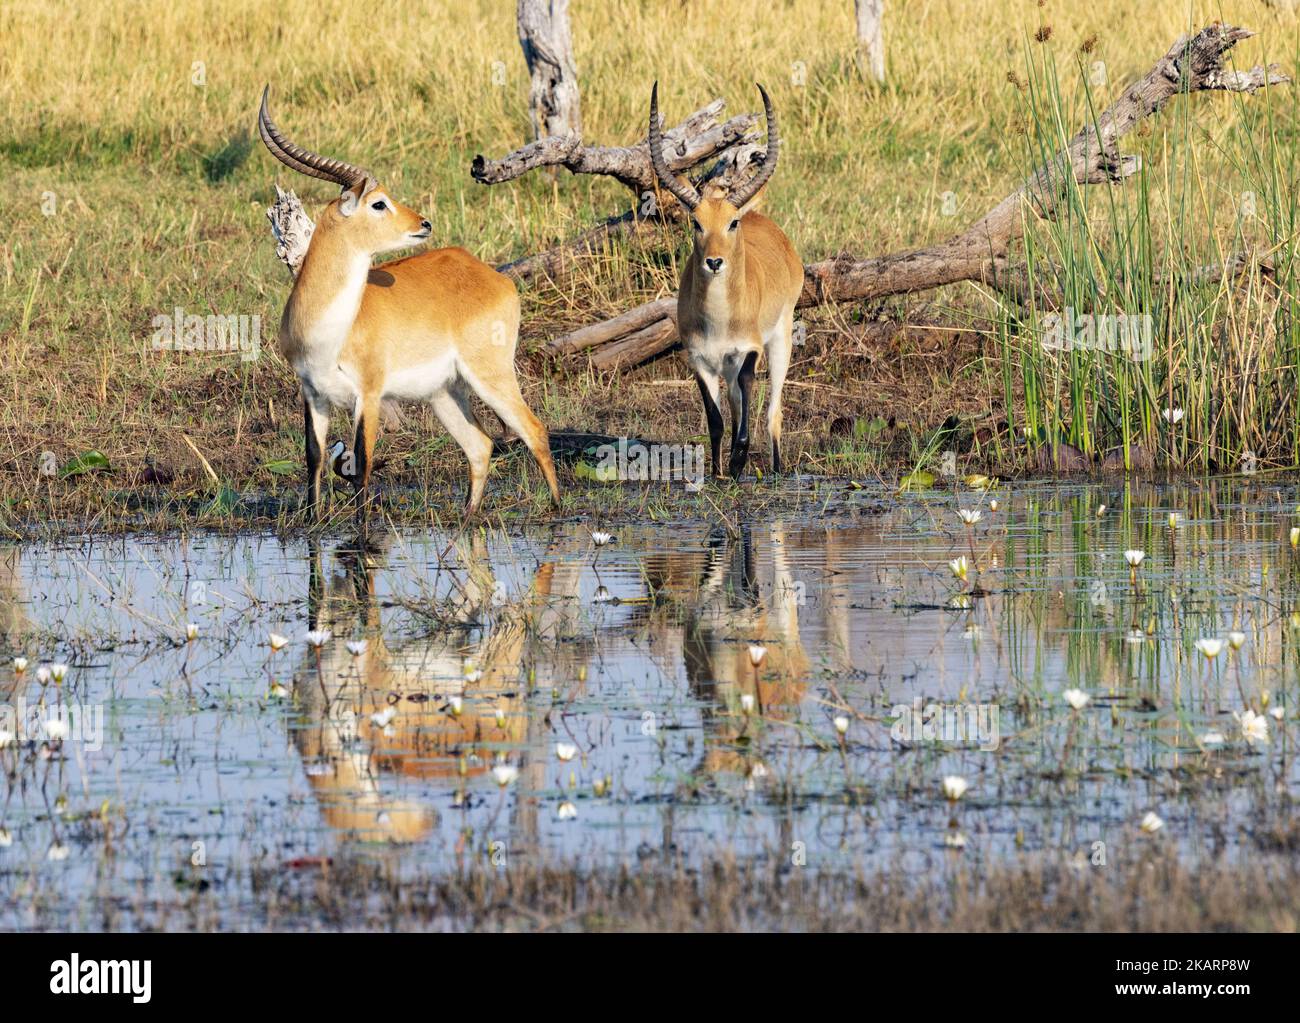 Antilope Red Lechwe en train de boire de la rivière Kwai, réserve de gibier de Moremi, delta d'Okavango, Botswana Afrique. Faune africaine. Banque D'Images